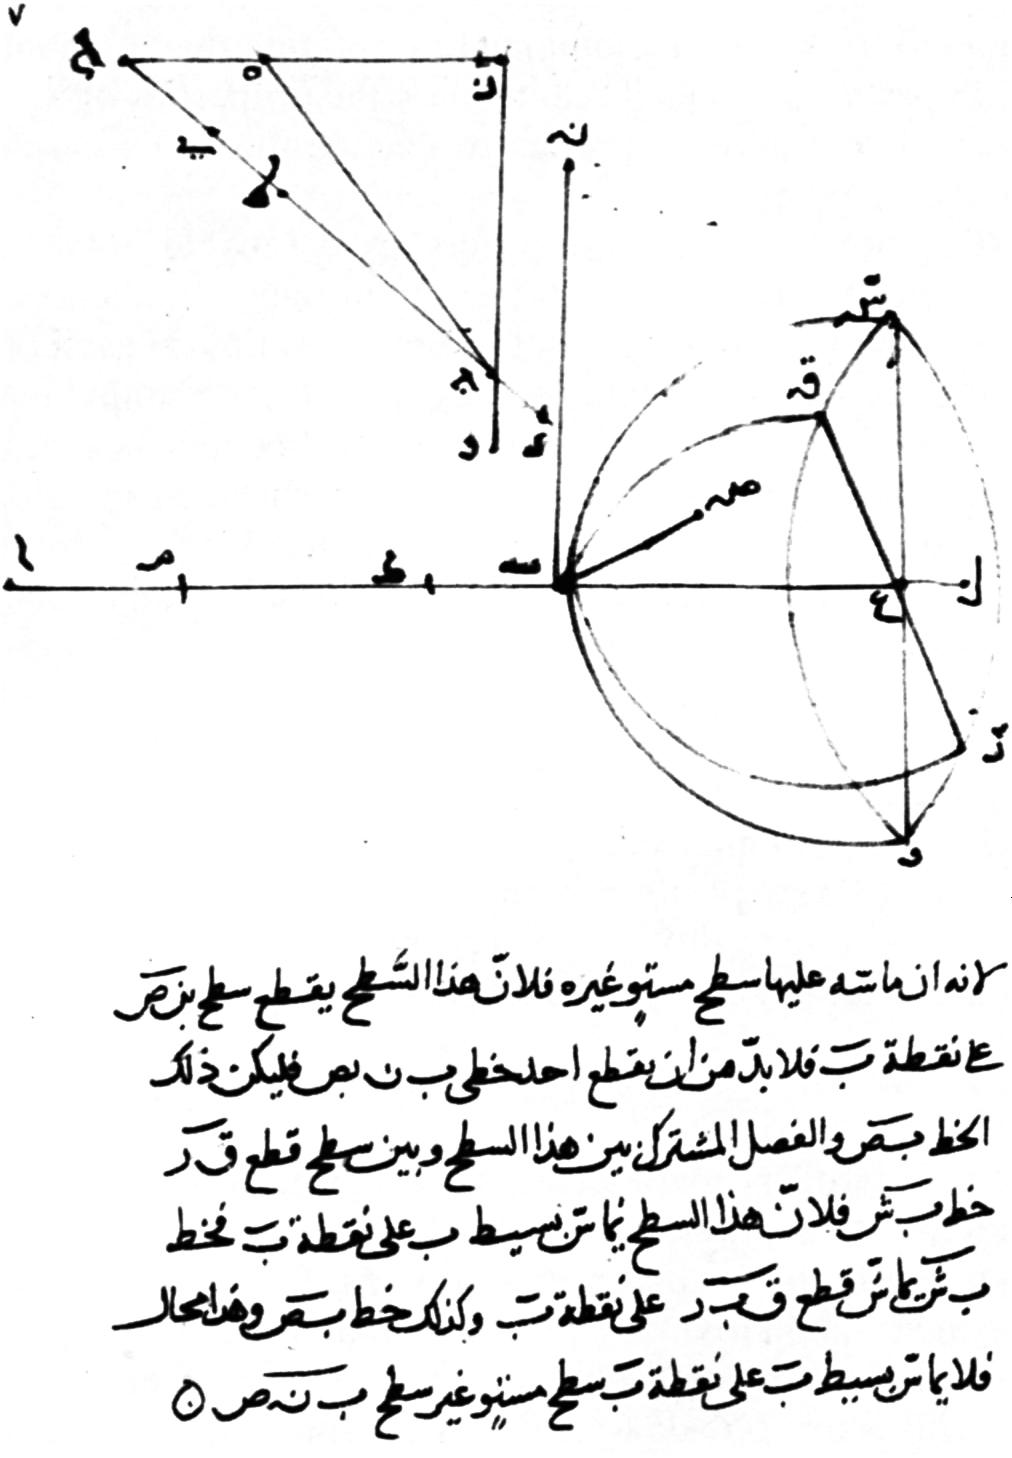 Skisser av brytningsvinkel og forklarende tekst på persisk. Illustrasjon.